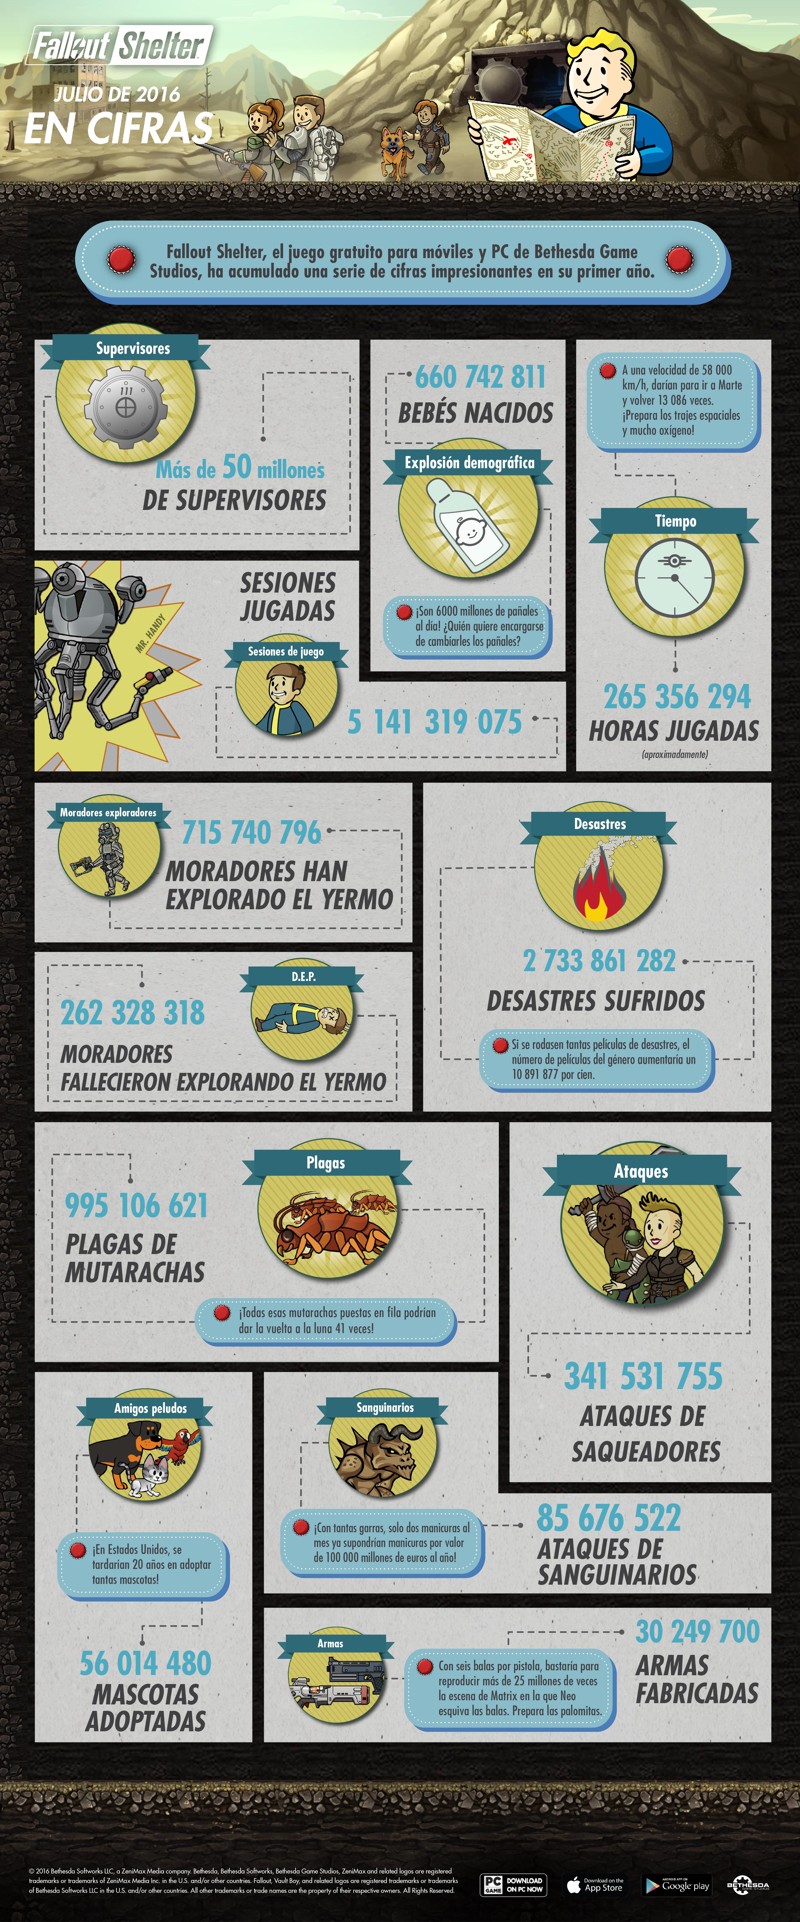 Infografía con curiosidades de Fallout Shelter